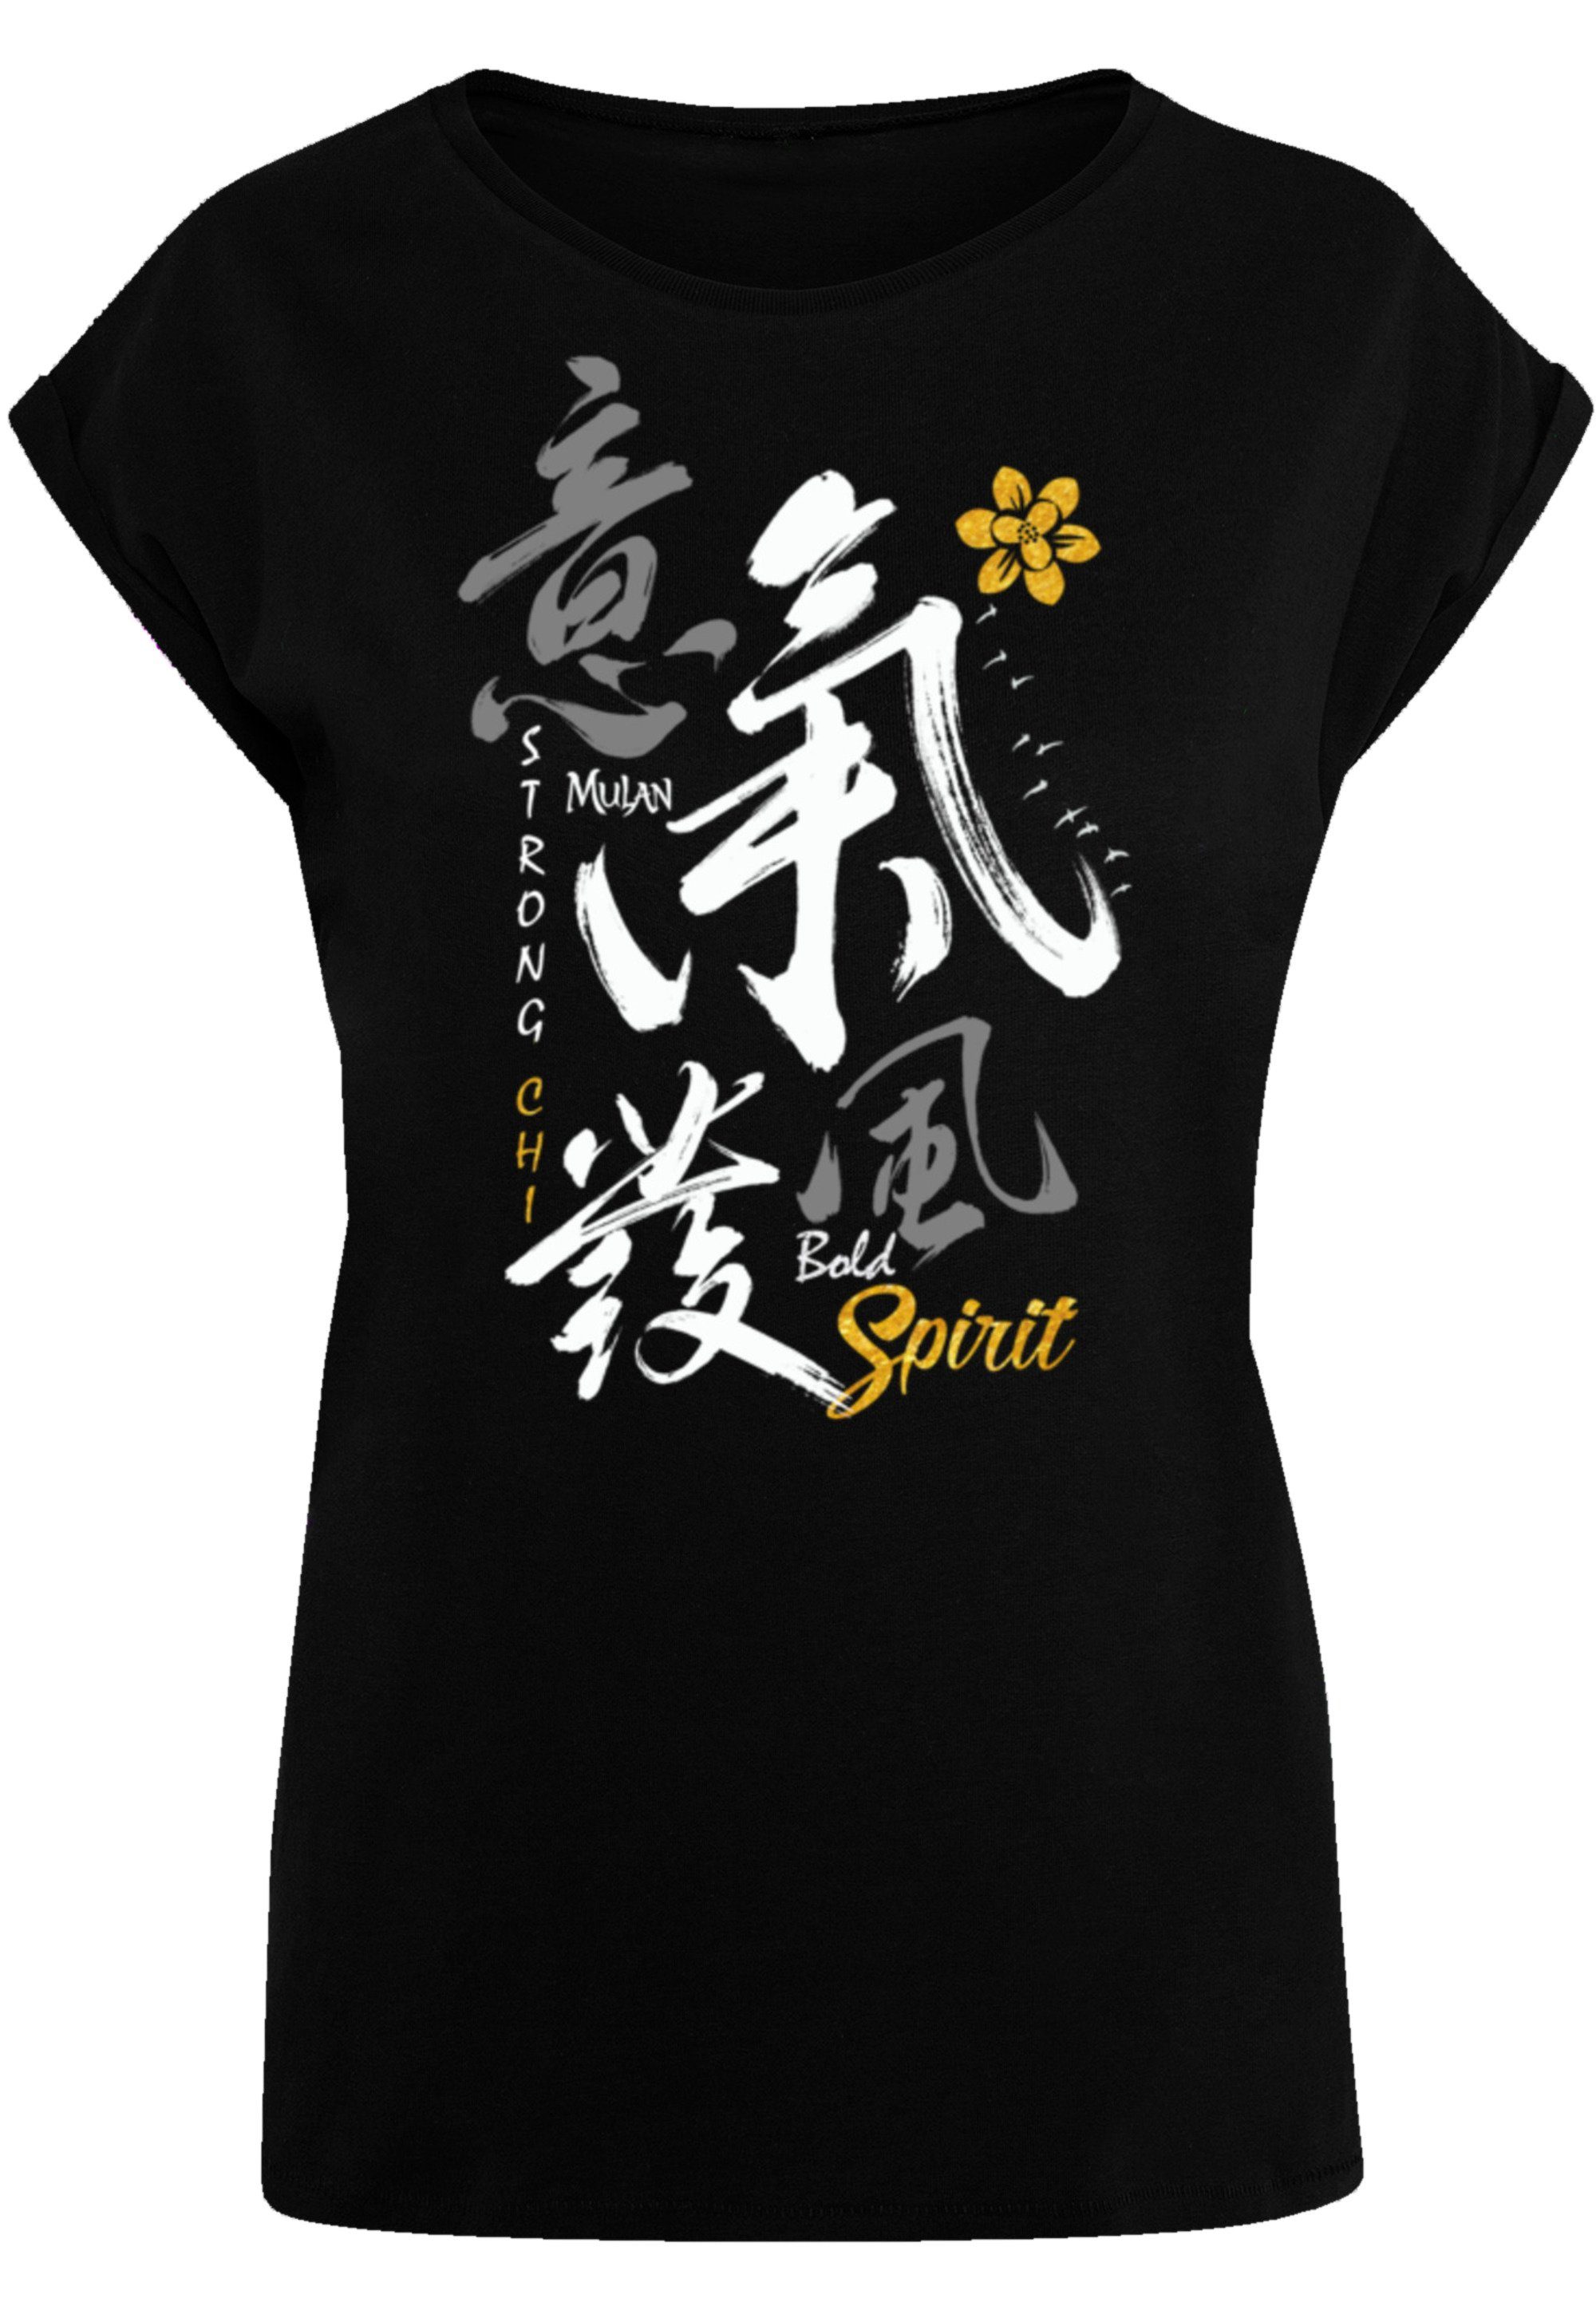 F4NT4STIC T-Shirt Disney Mulan Bold Spirit Qualität, Premium Disney T-Shirt Offiziell lizenziertes